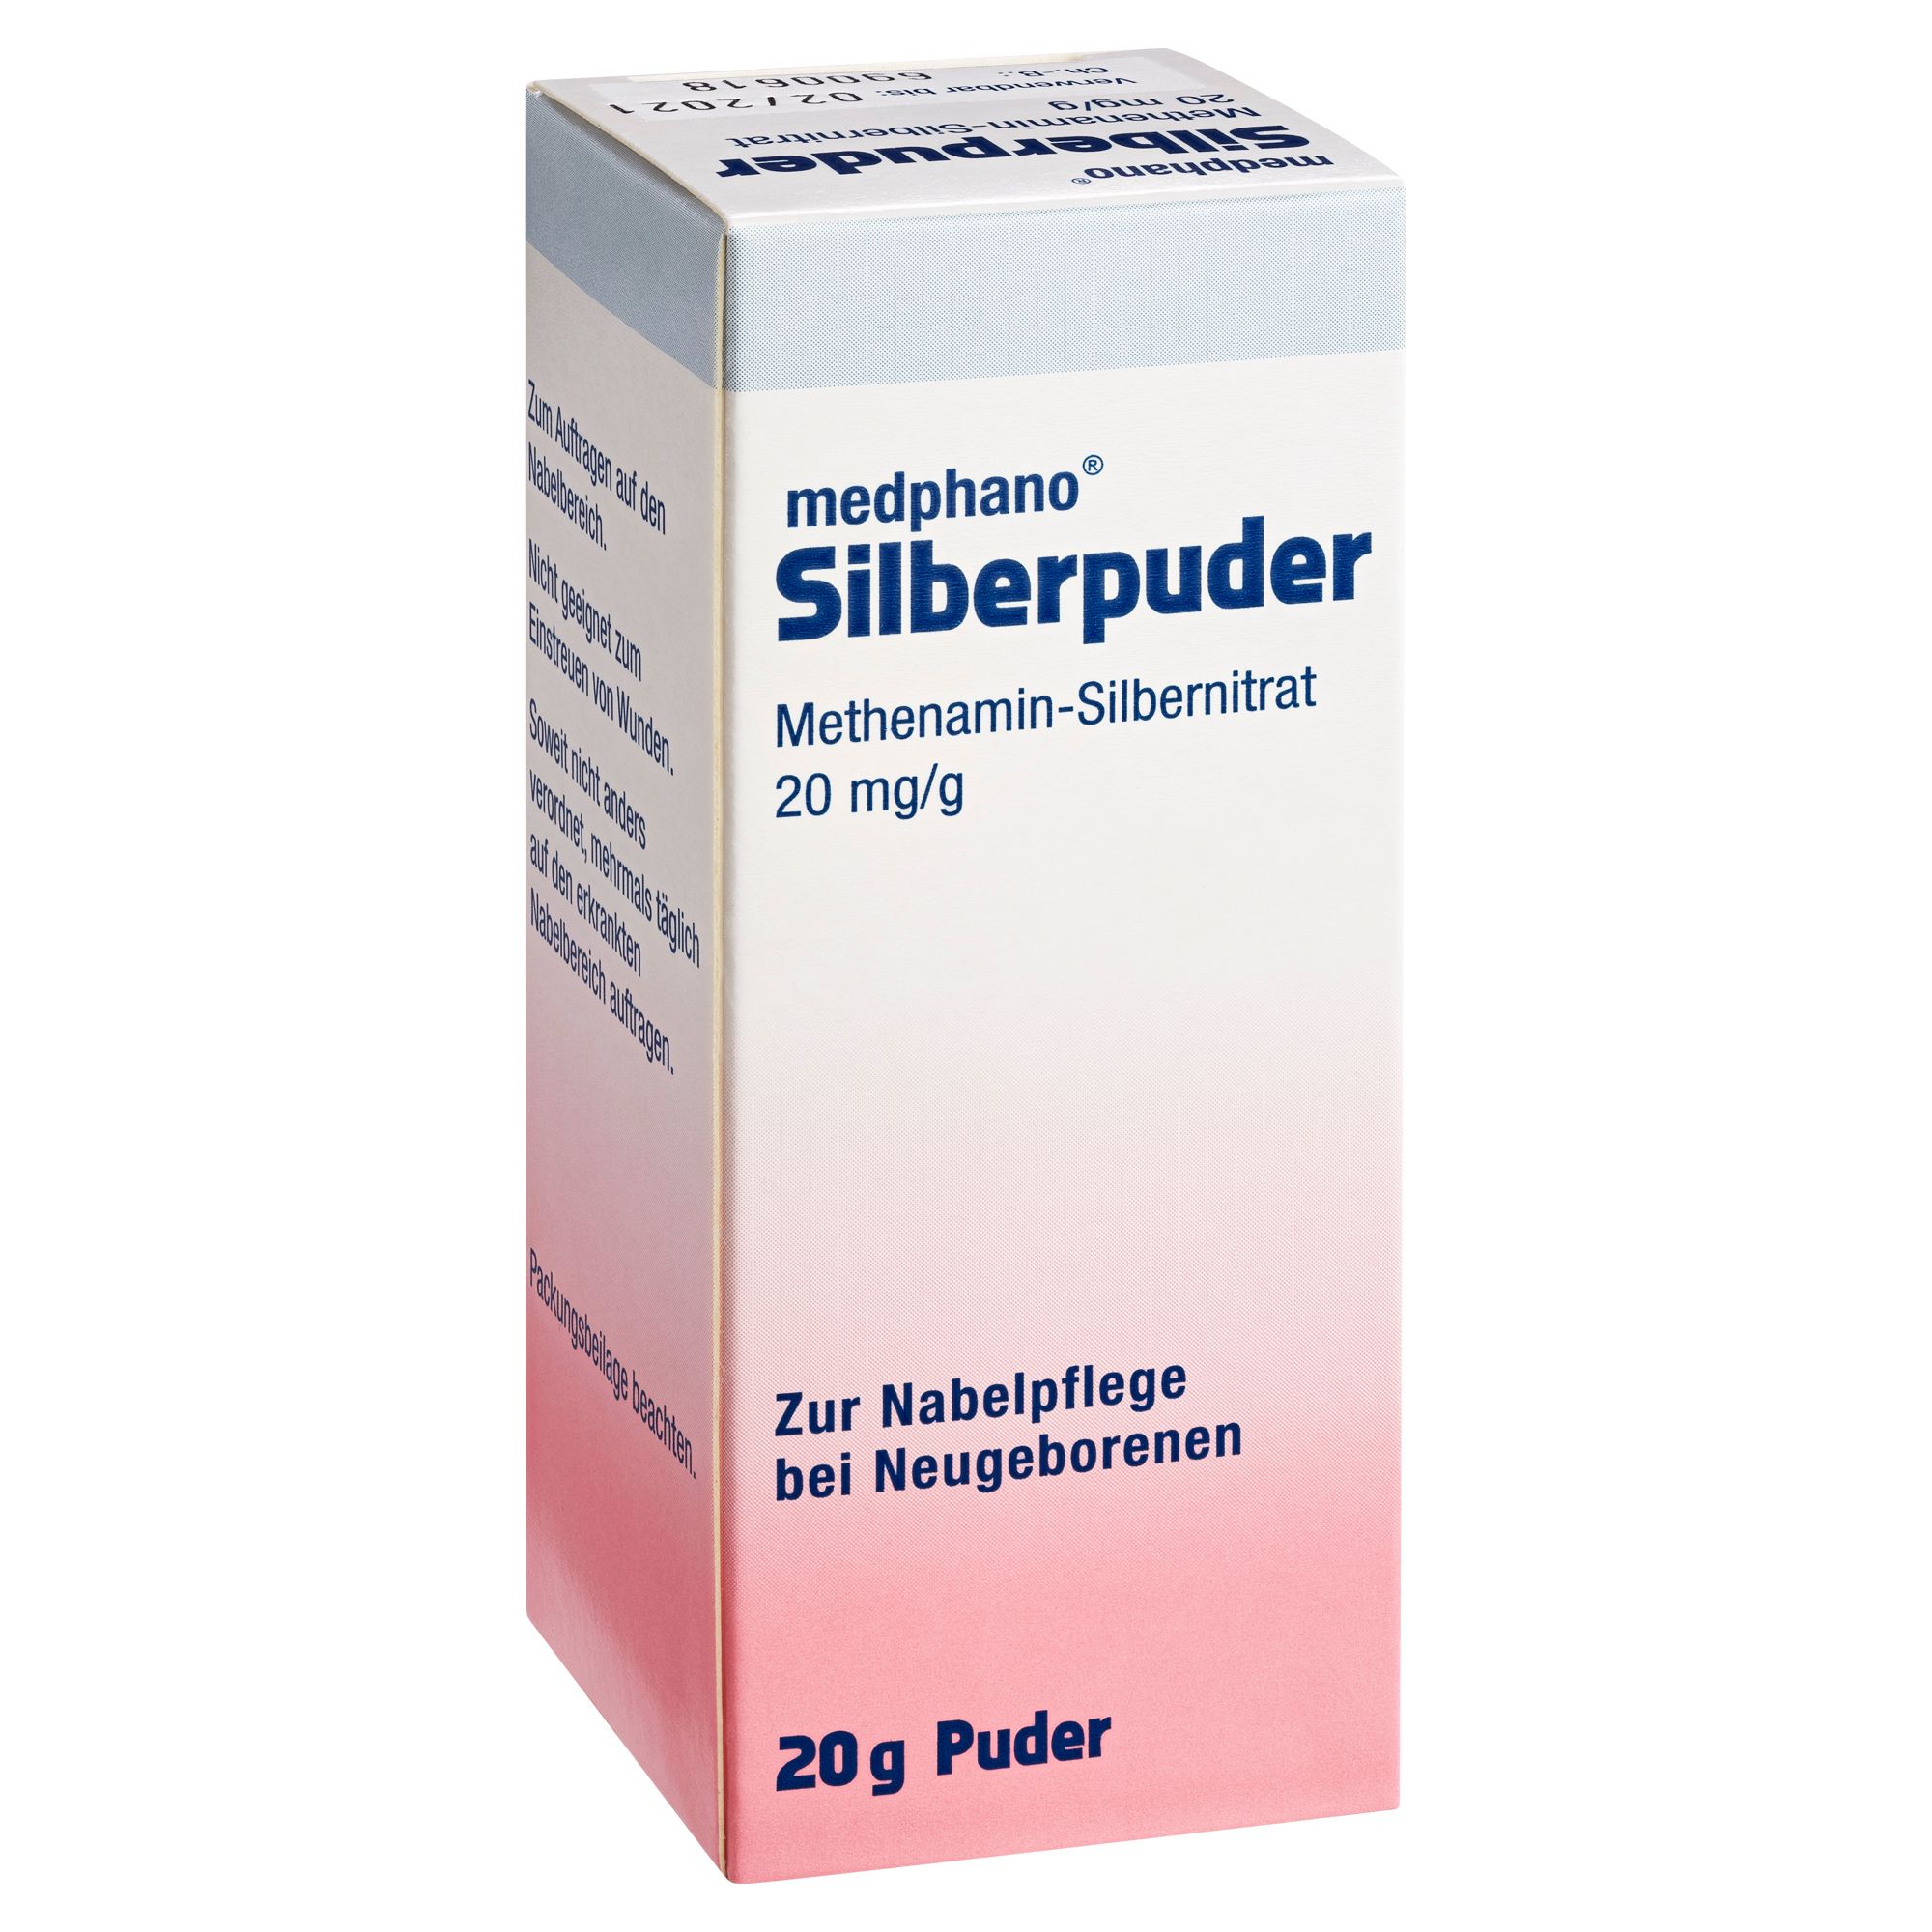 medphano® Silberpuder